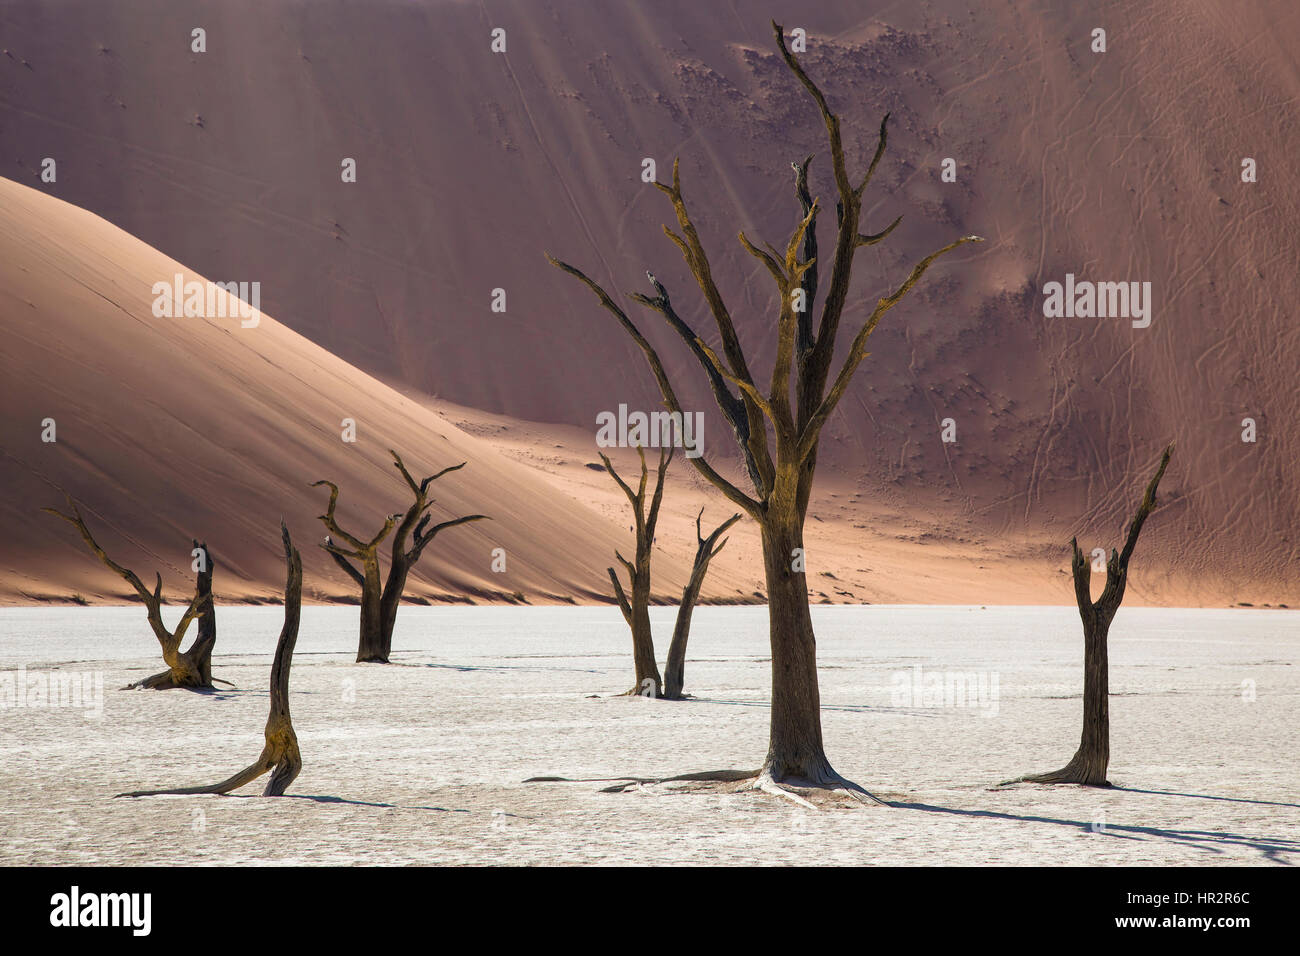 Dunes de sable et les arbres Camelthorn morts, Deadvlei, Sossusvlei, Désert du Namib, Namibie, par Monika Hrdinova/Dembinsky Assoc Photo Banque D'Images